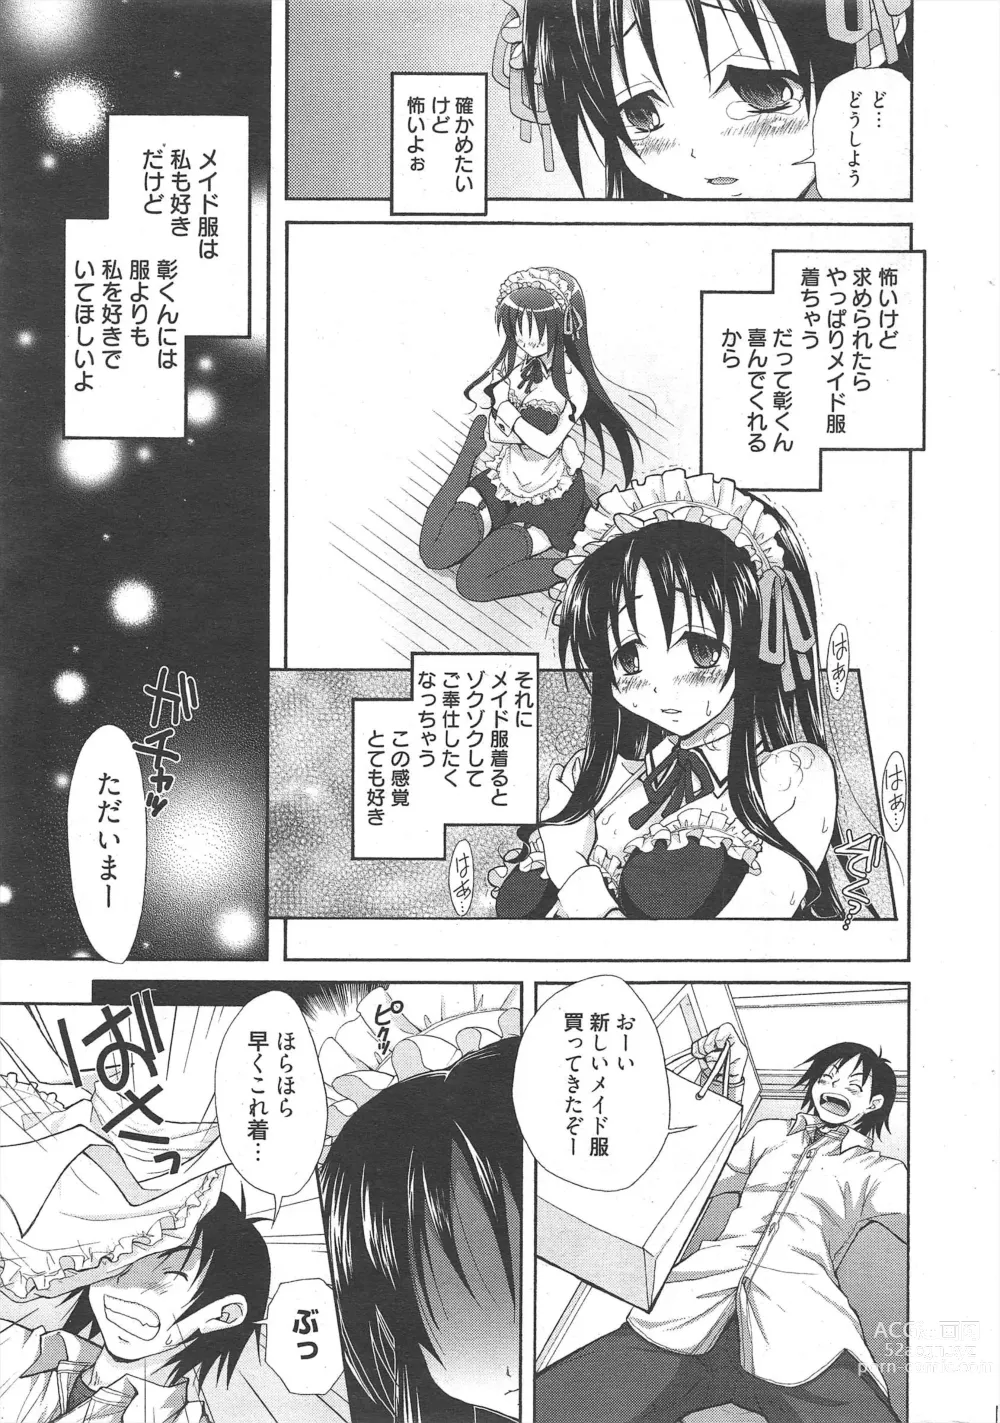 Page 13 of manga Manga Bangaichi 2011-08